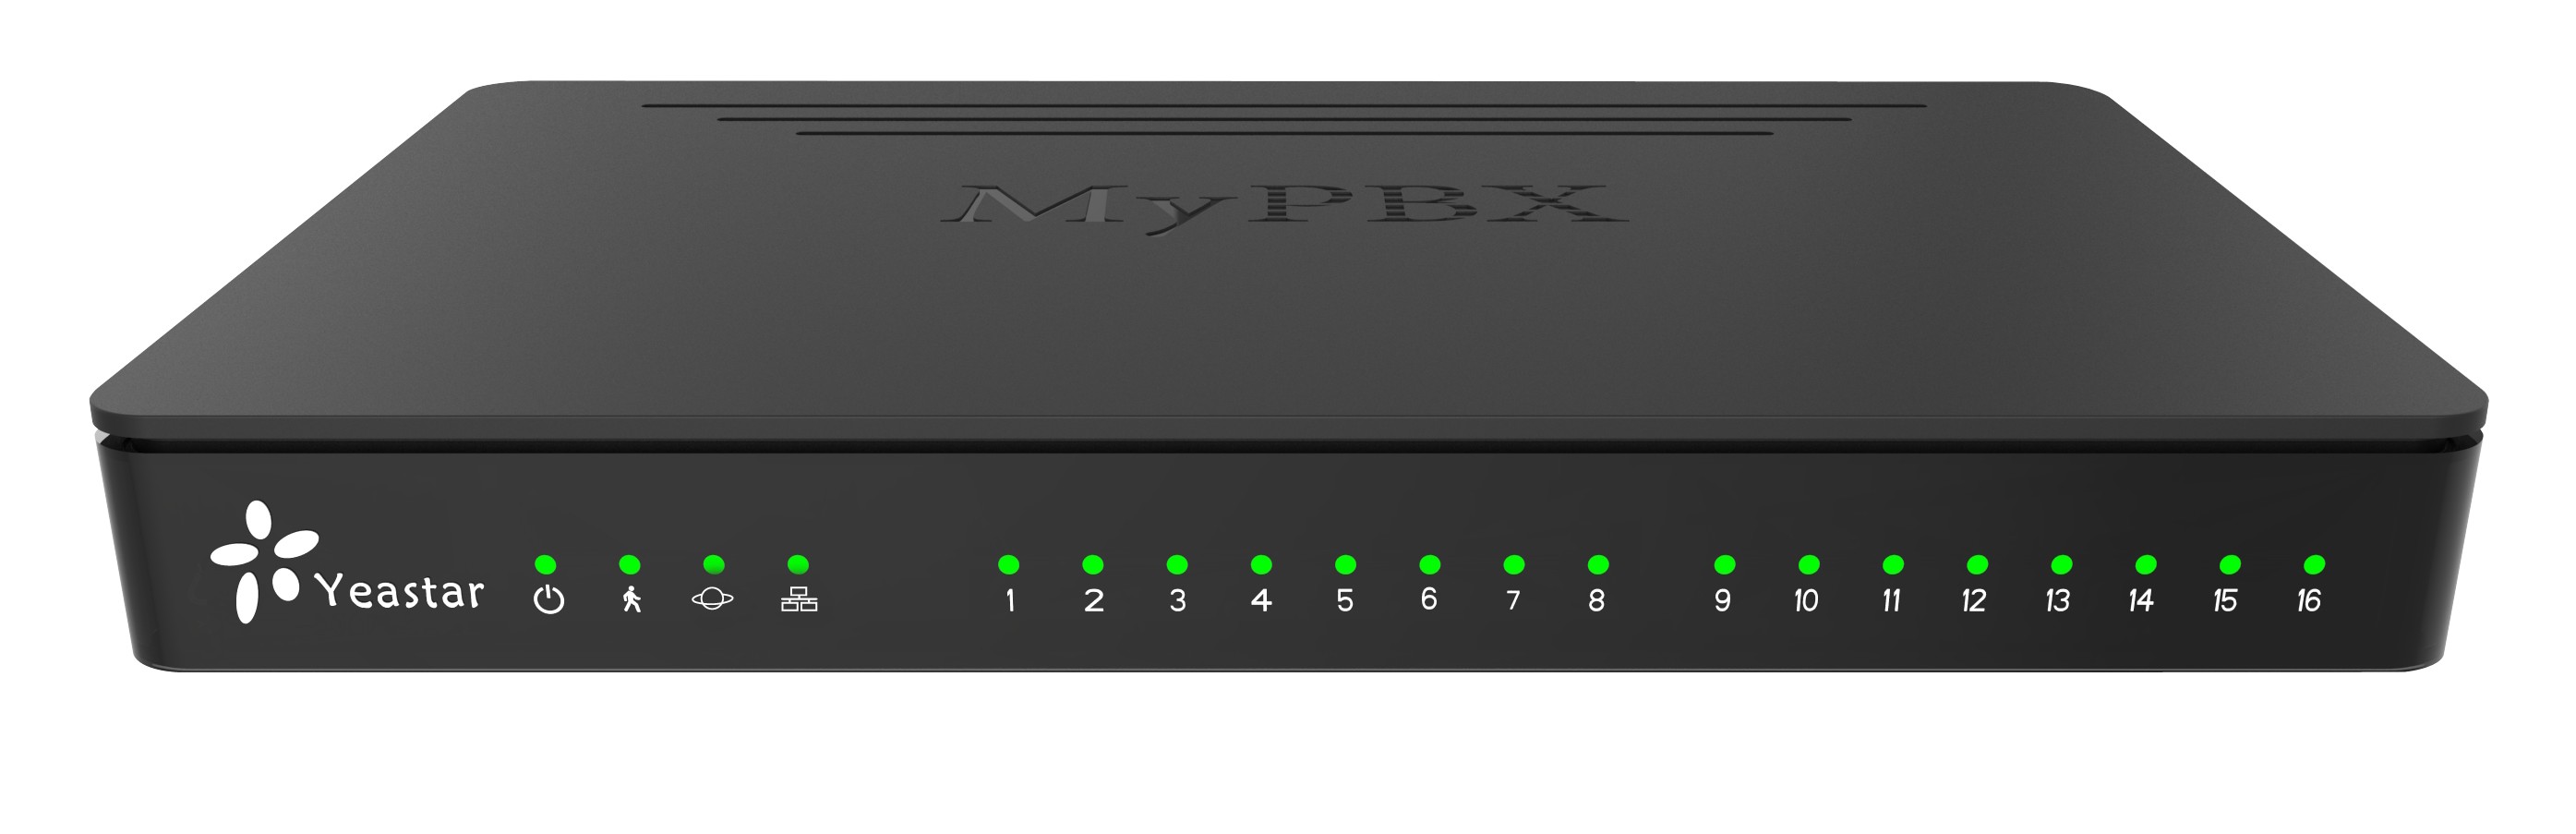 朗视标准型IPPBX - MyPBX Standard